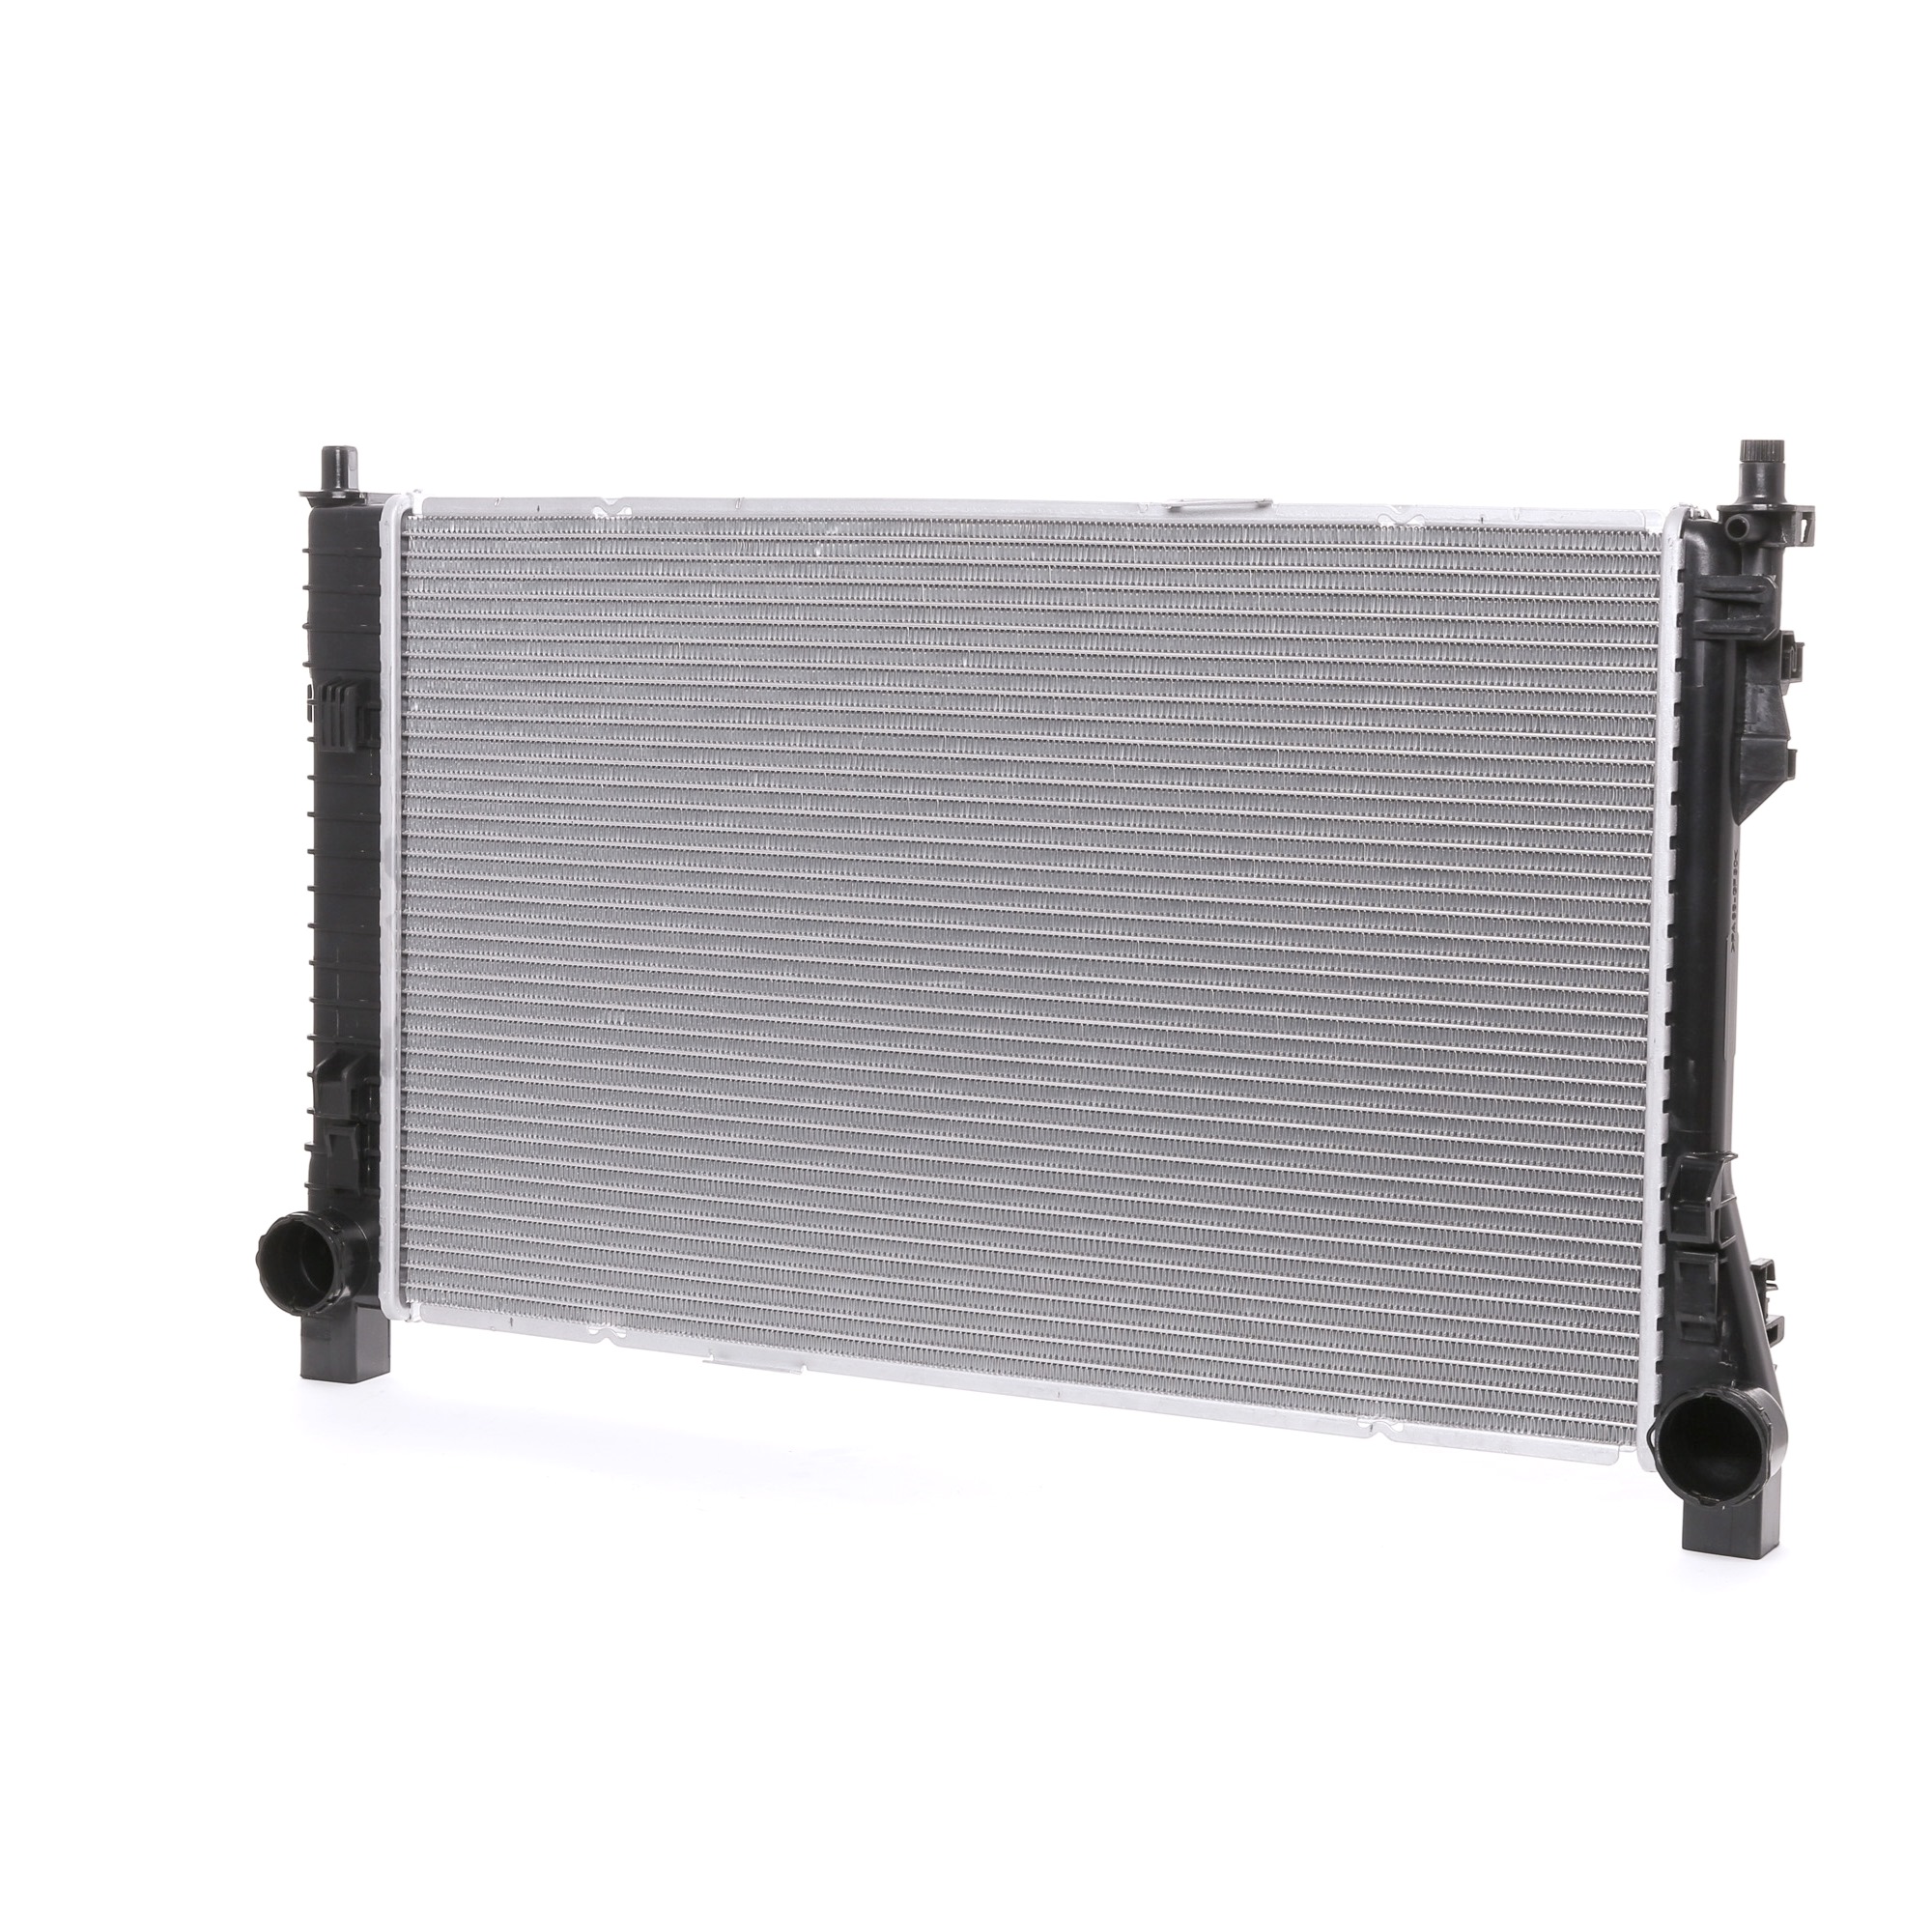 STARK Aluminium, Brazed cooling fins Radiator SKRD-0120549 buy